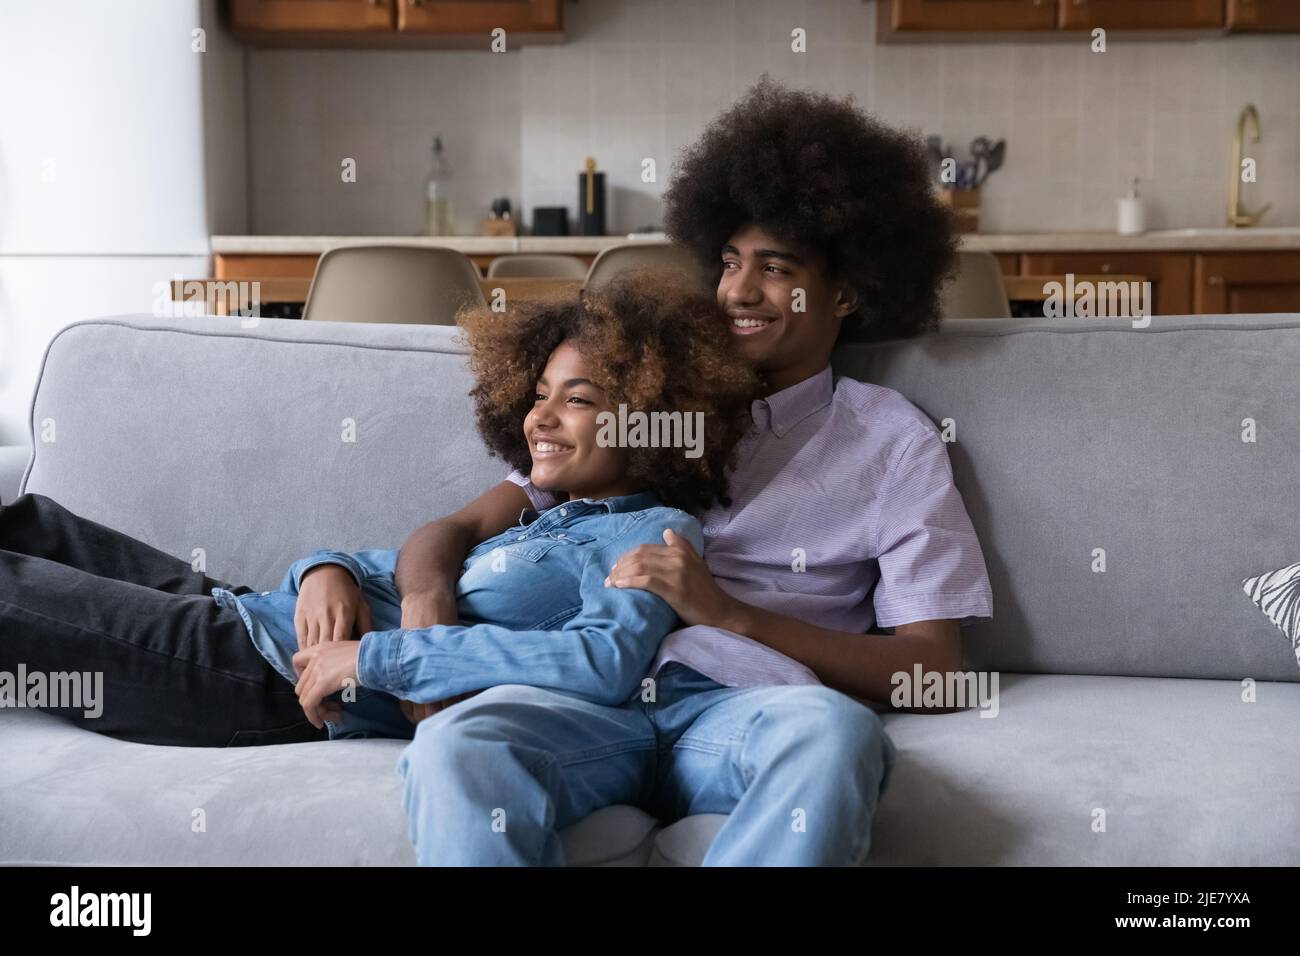 Afrikanisches Teenager-Paar, das sich auf dem Sofa entspannt und lächelnd in die Ferne starrt Stockfoto